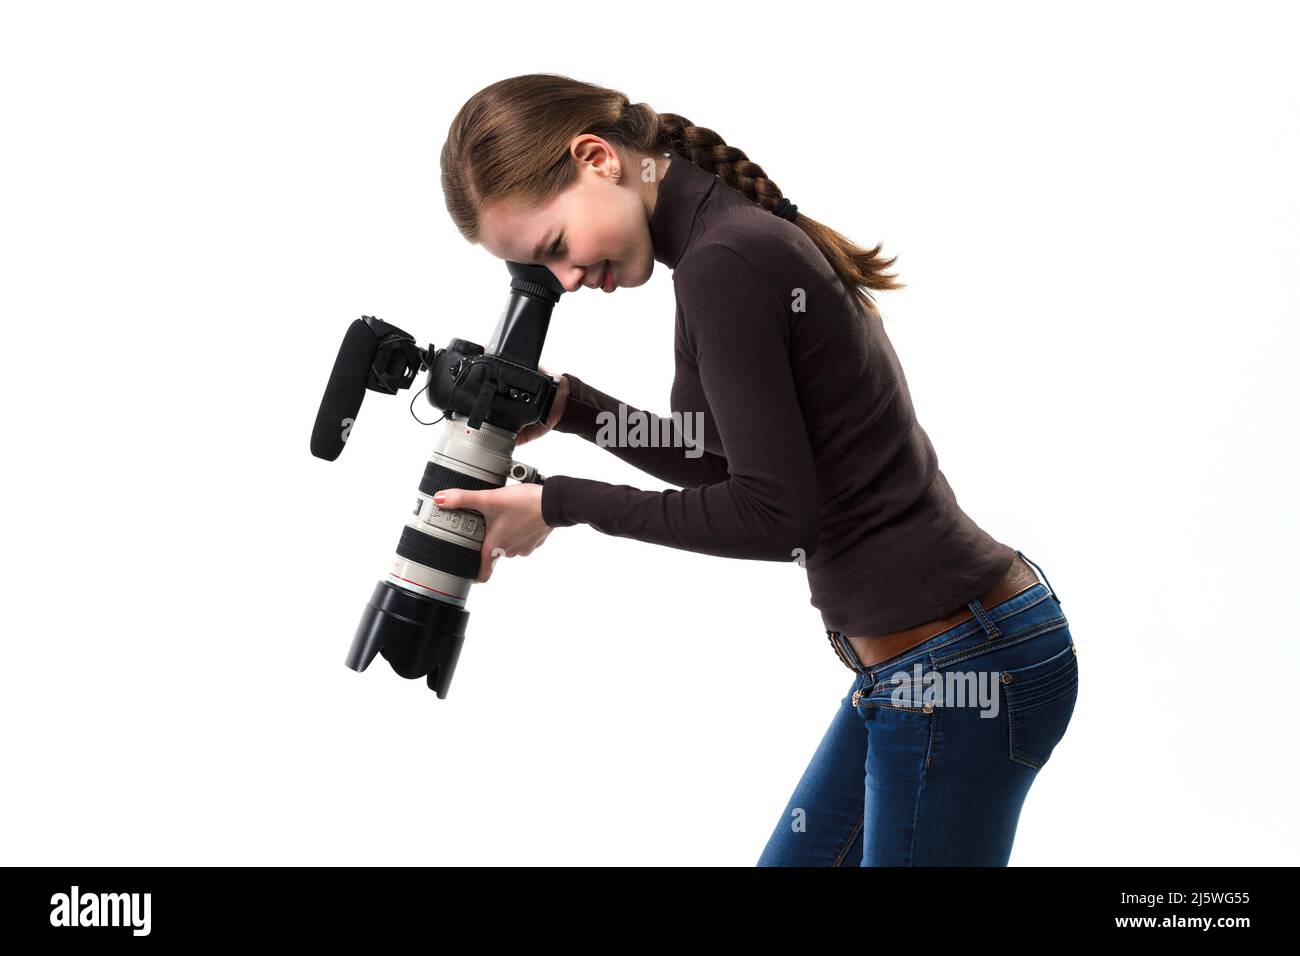 La bella fotografo ragazza con fotocamera reflex professionale in posa su uno sfondo bianco in studio. Concetto di apprendimento fotografico, studio, formazione Foto Stock